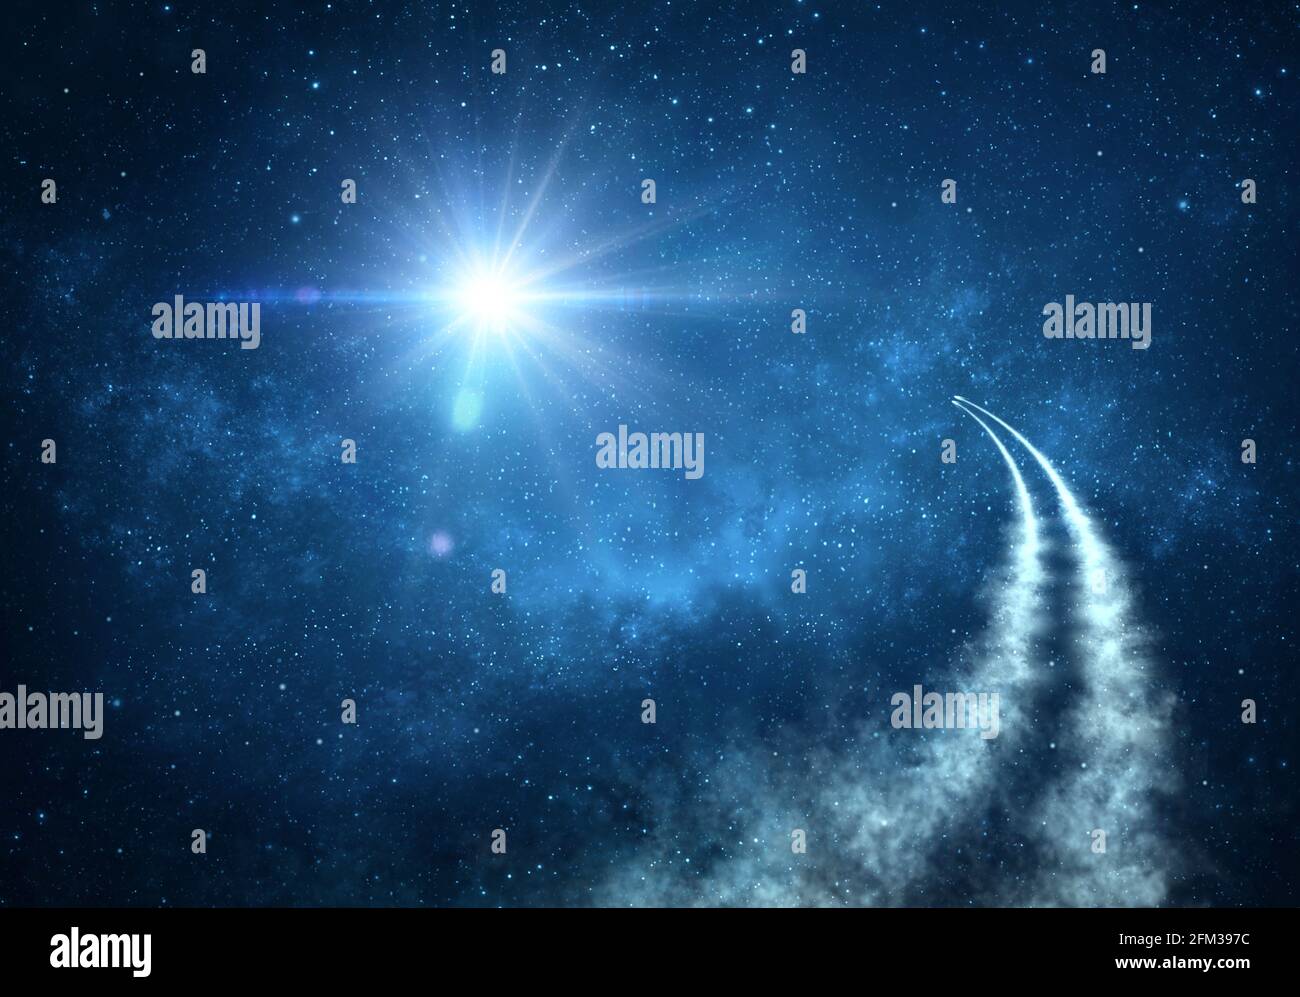 Raumschiffe, die in den Weltraum reisen und das Universum, Sternenkonstellationen und Nebel erkunden. Kometen, Meteore und ein riesiges Sternenlicht in der Nacht des Himmels Stockfoto